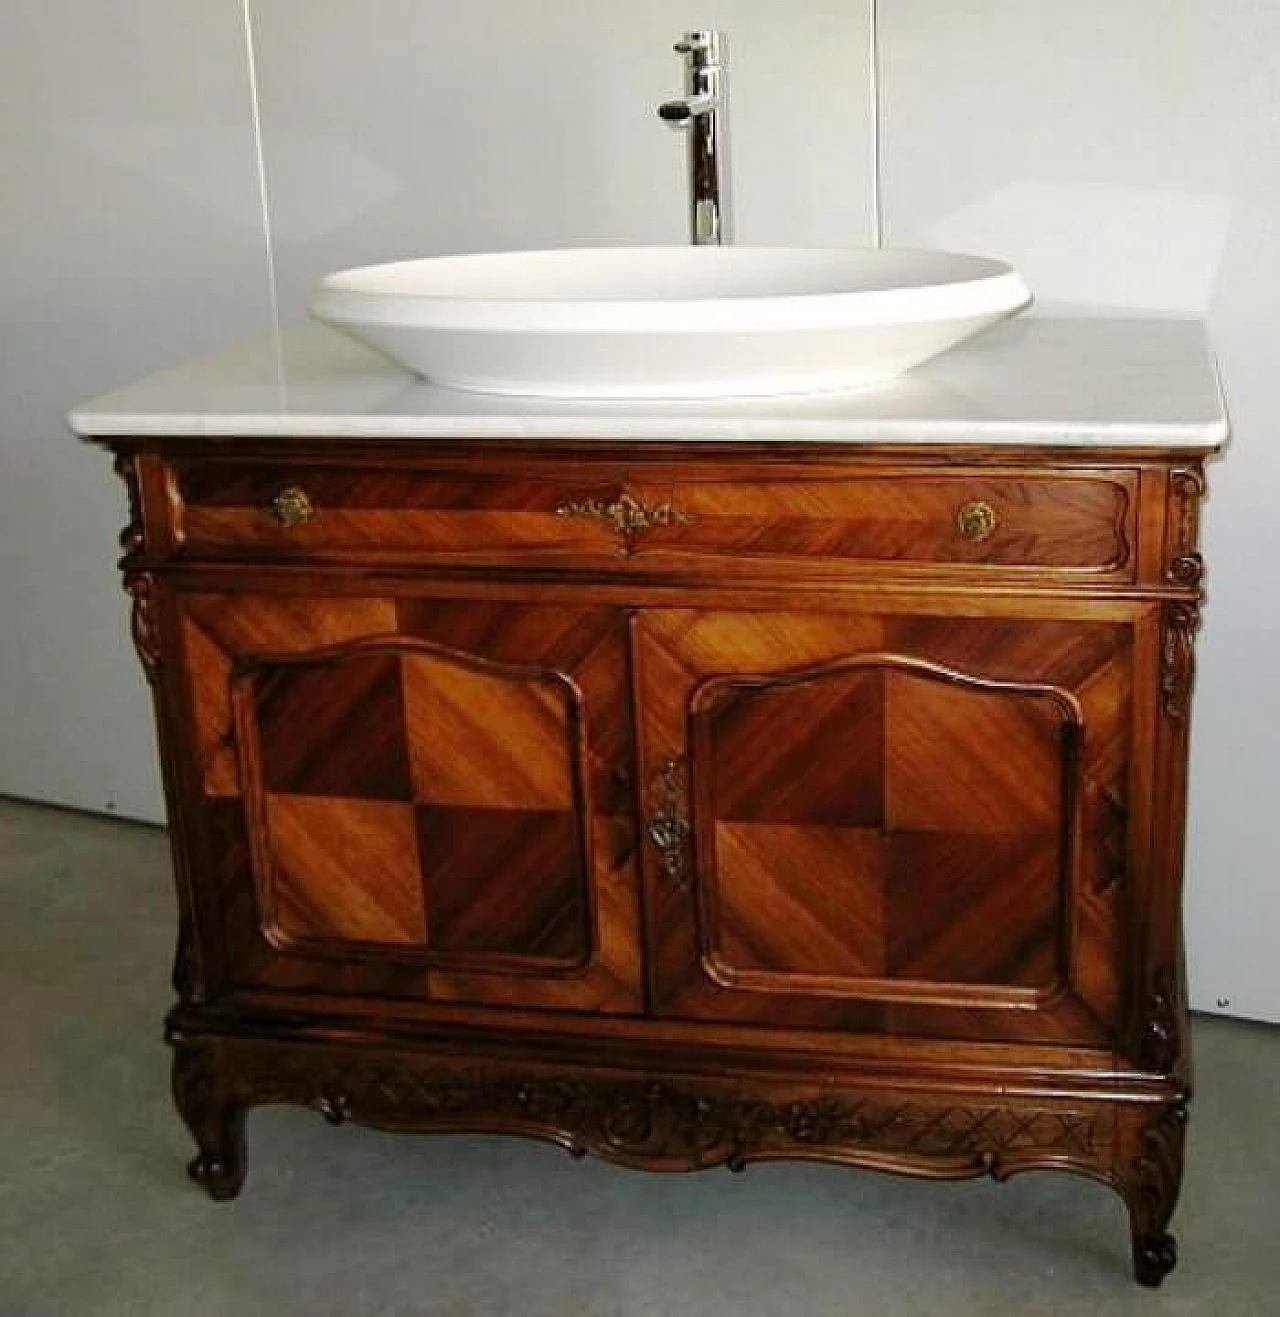 Mobile o toilette francese antica da bagno in noce e marmo di carrara, inizio '900 1167112